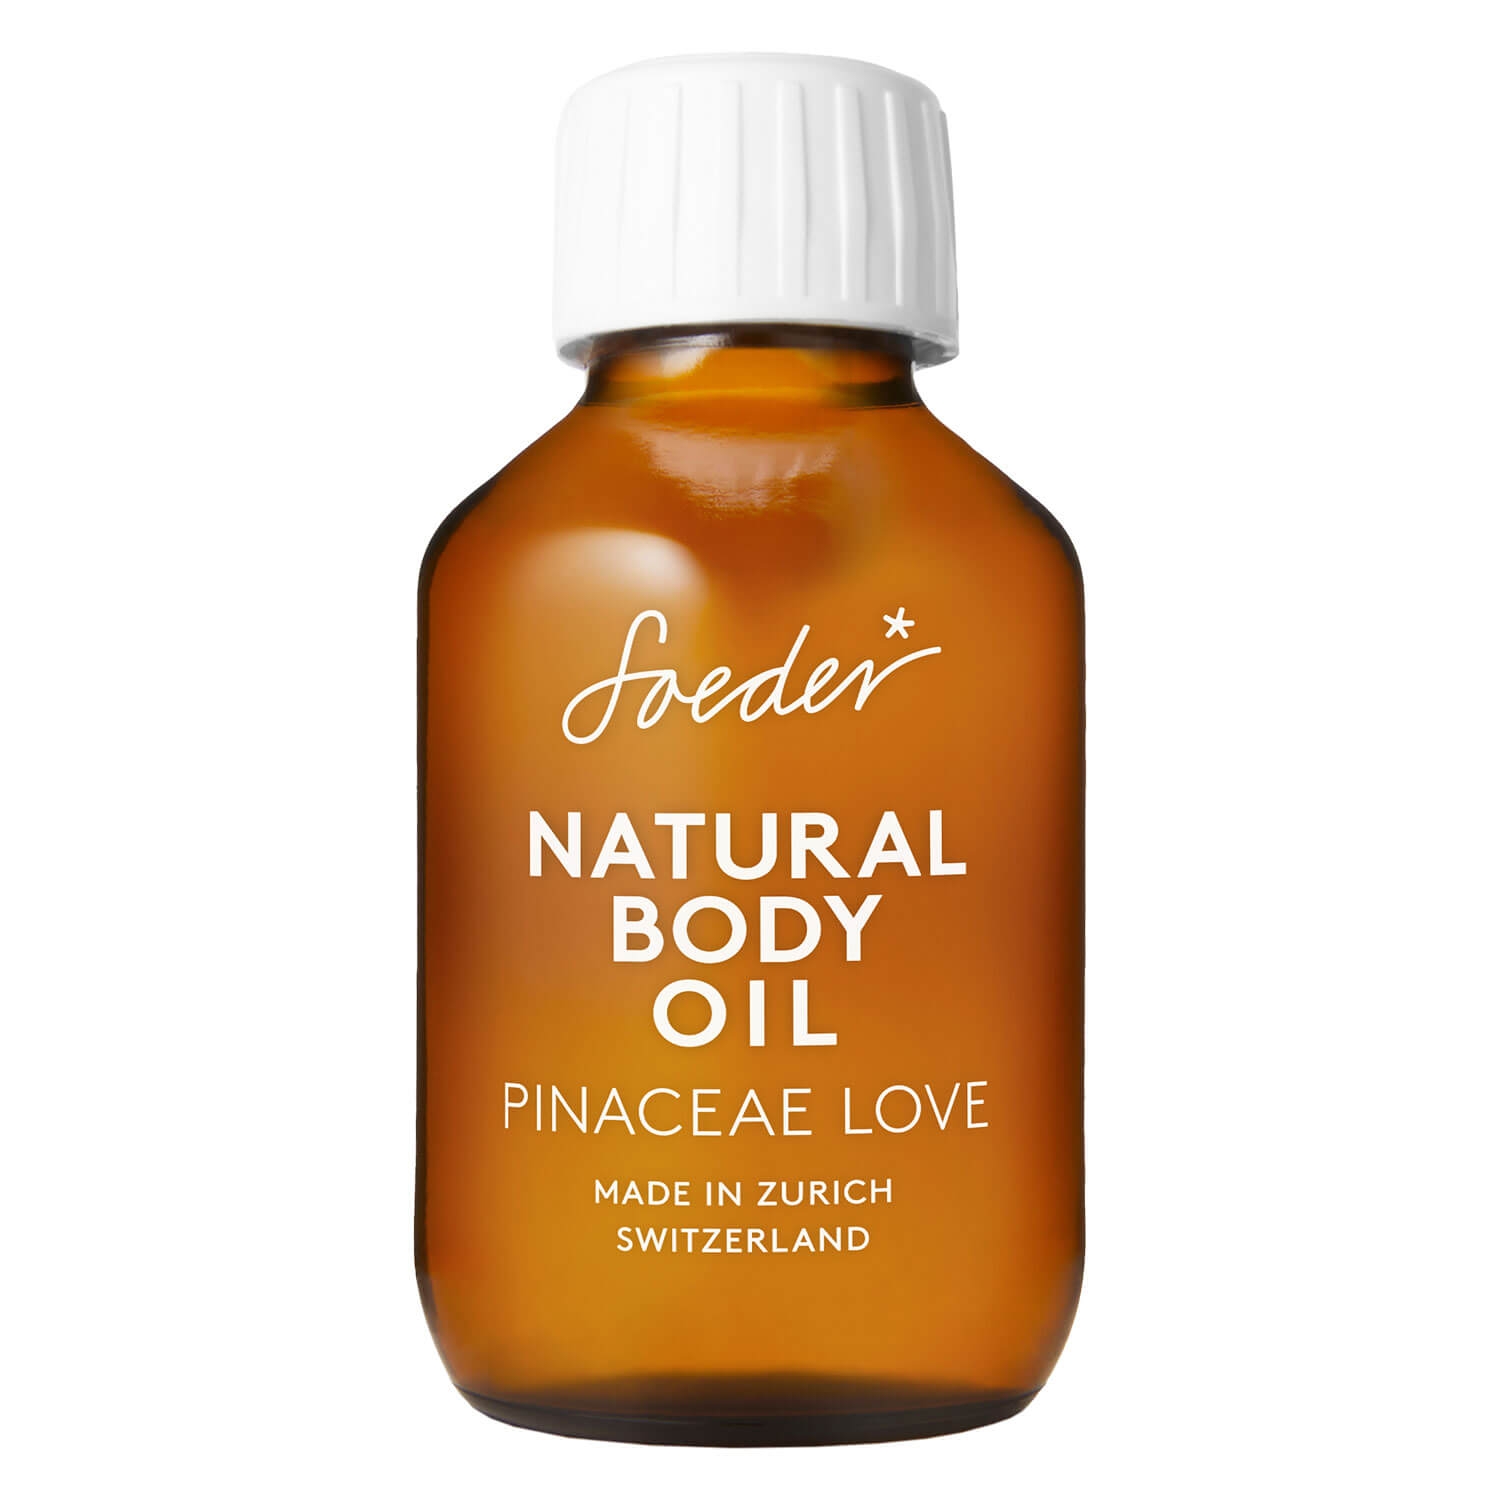 Produktbild von Soeder - Natural Body Oil Pinaceae Love